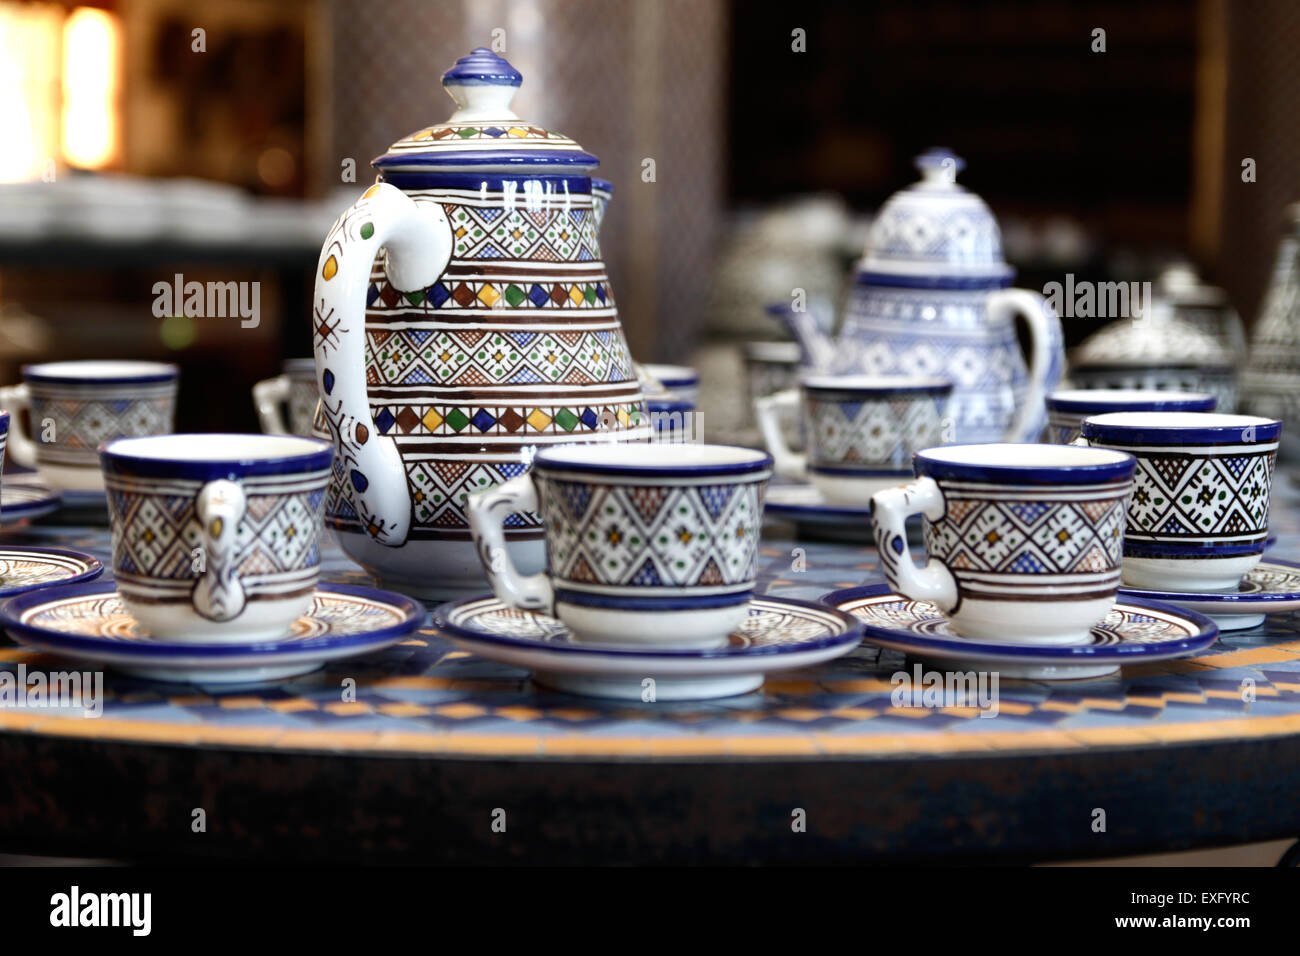 Servizio di caffe' in ceramica Marocchina caratterizzato da disegni Berbero disegnati a mano Foto Stock